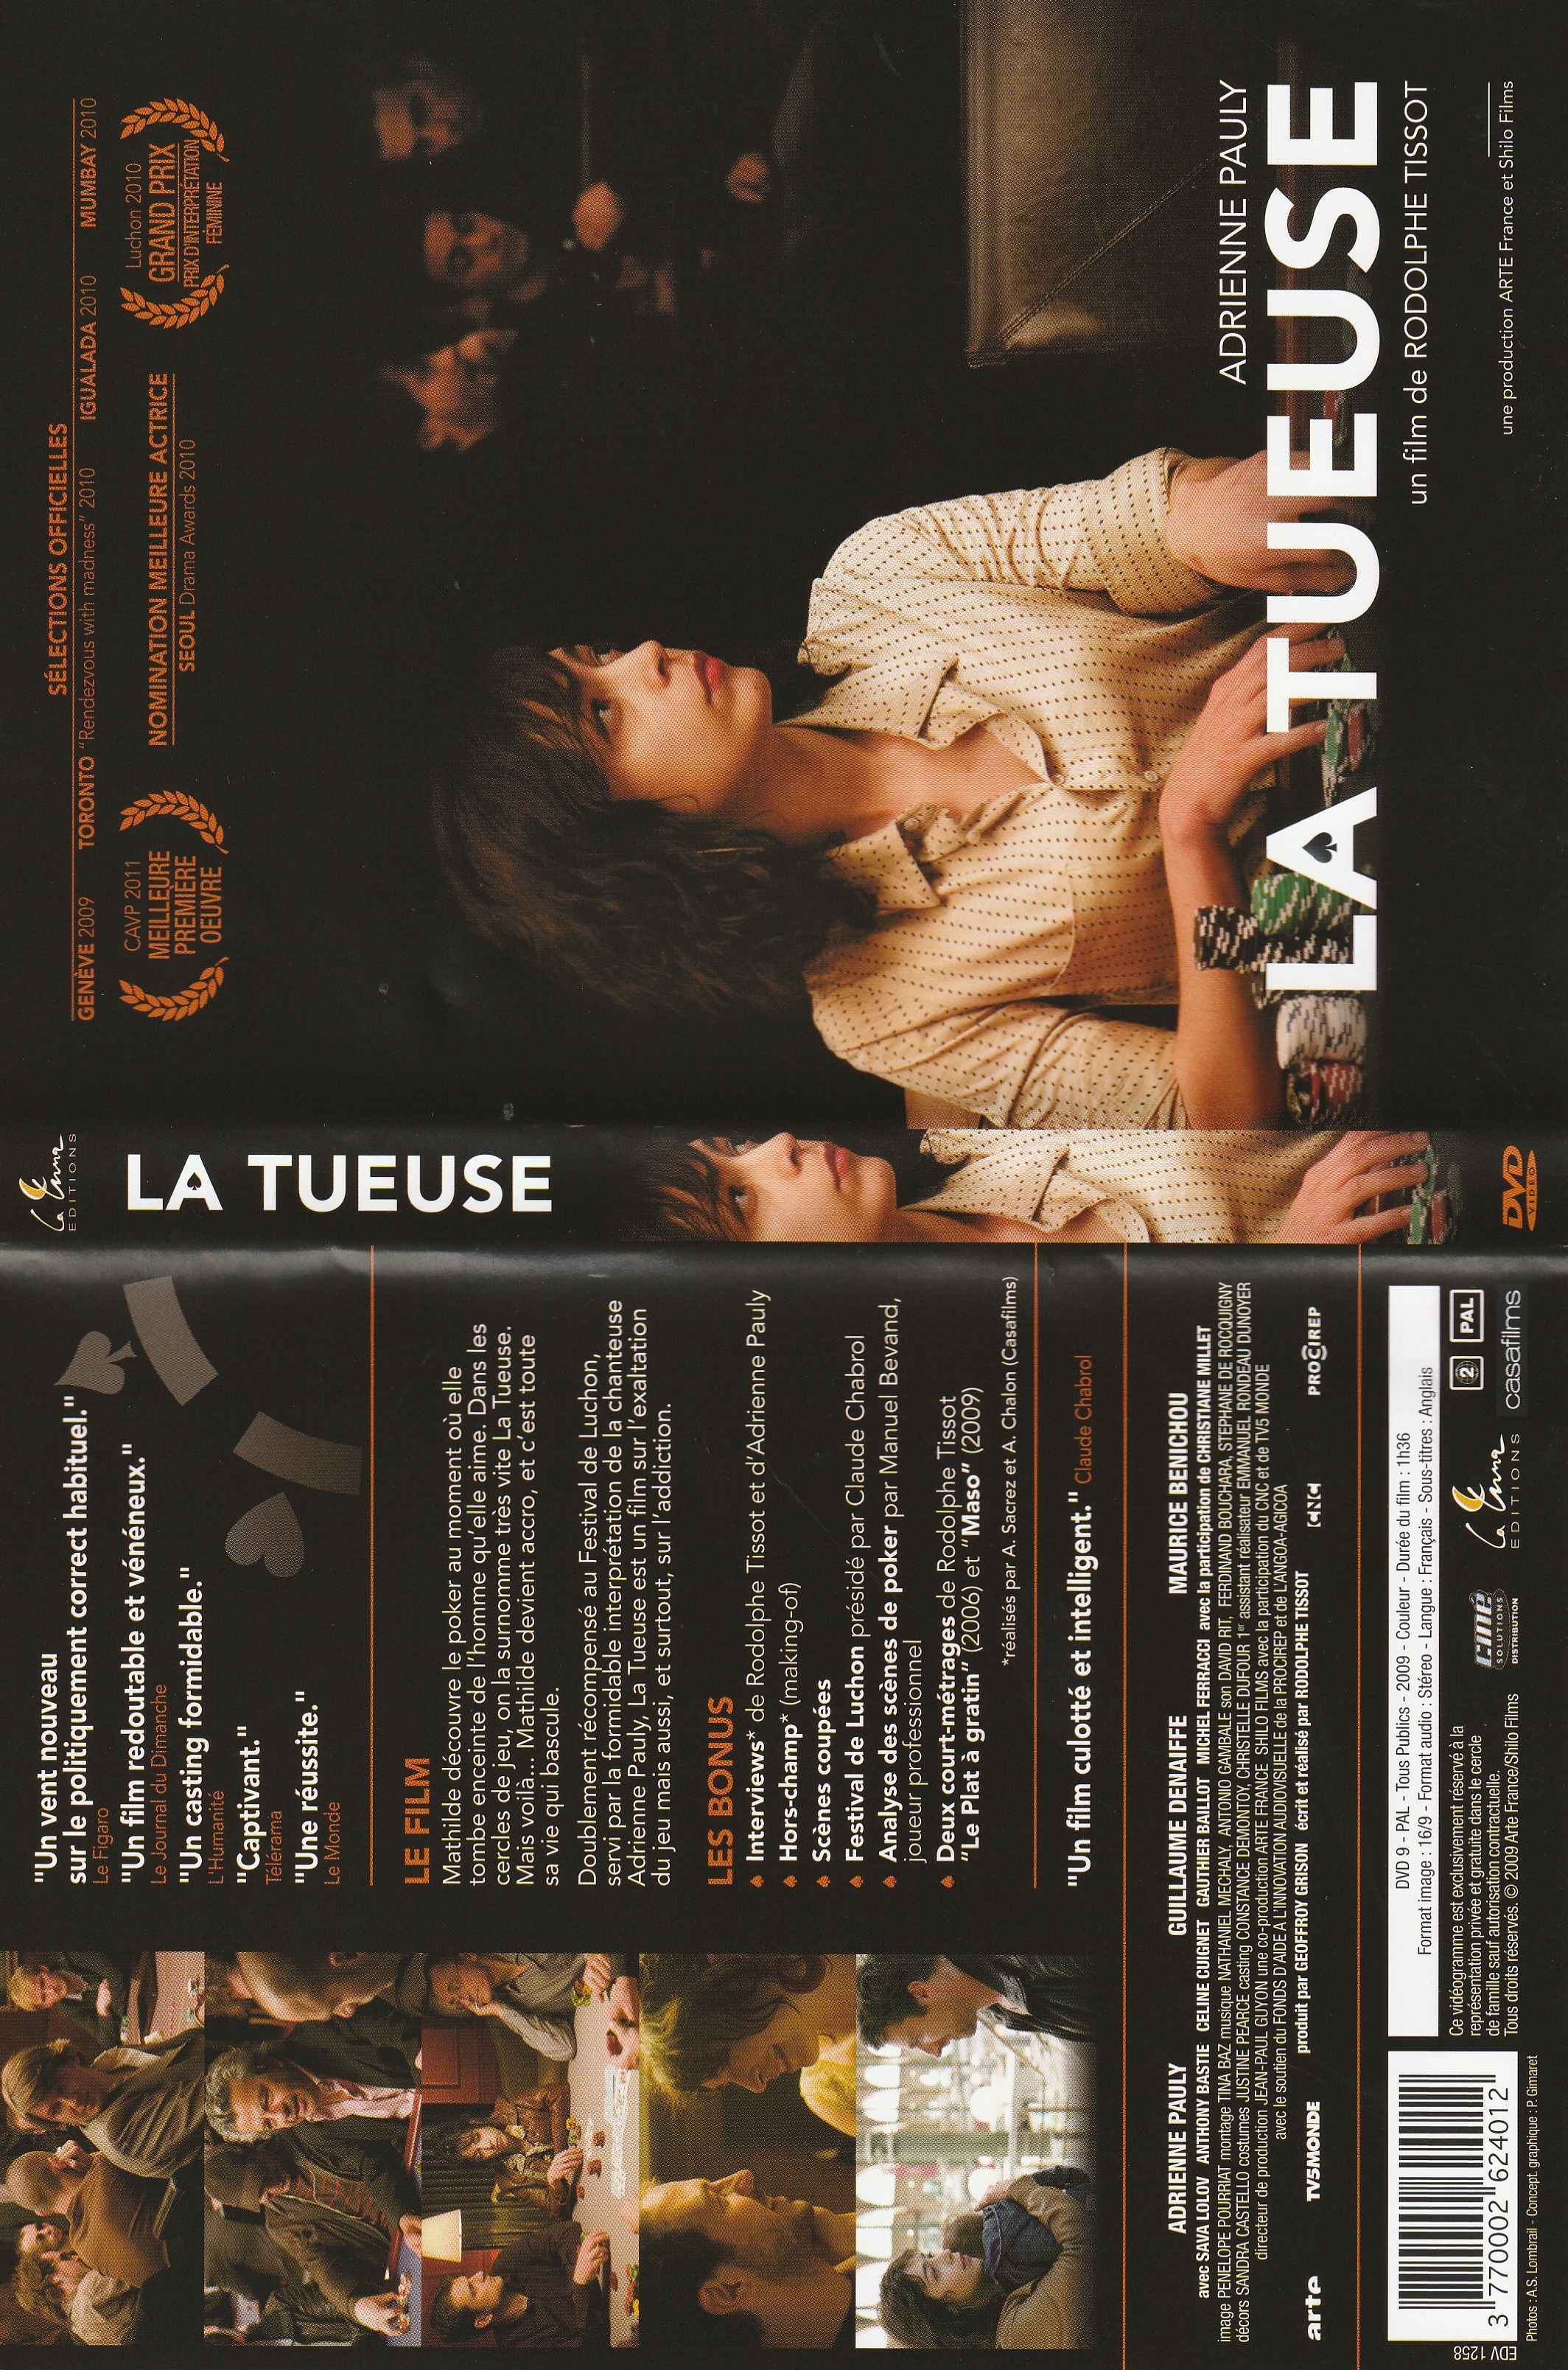 Jaquette DVD La tueuse (2009)